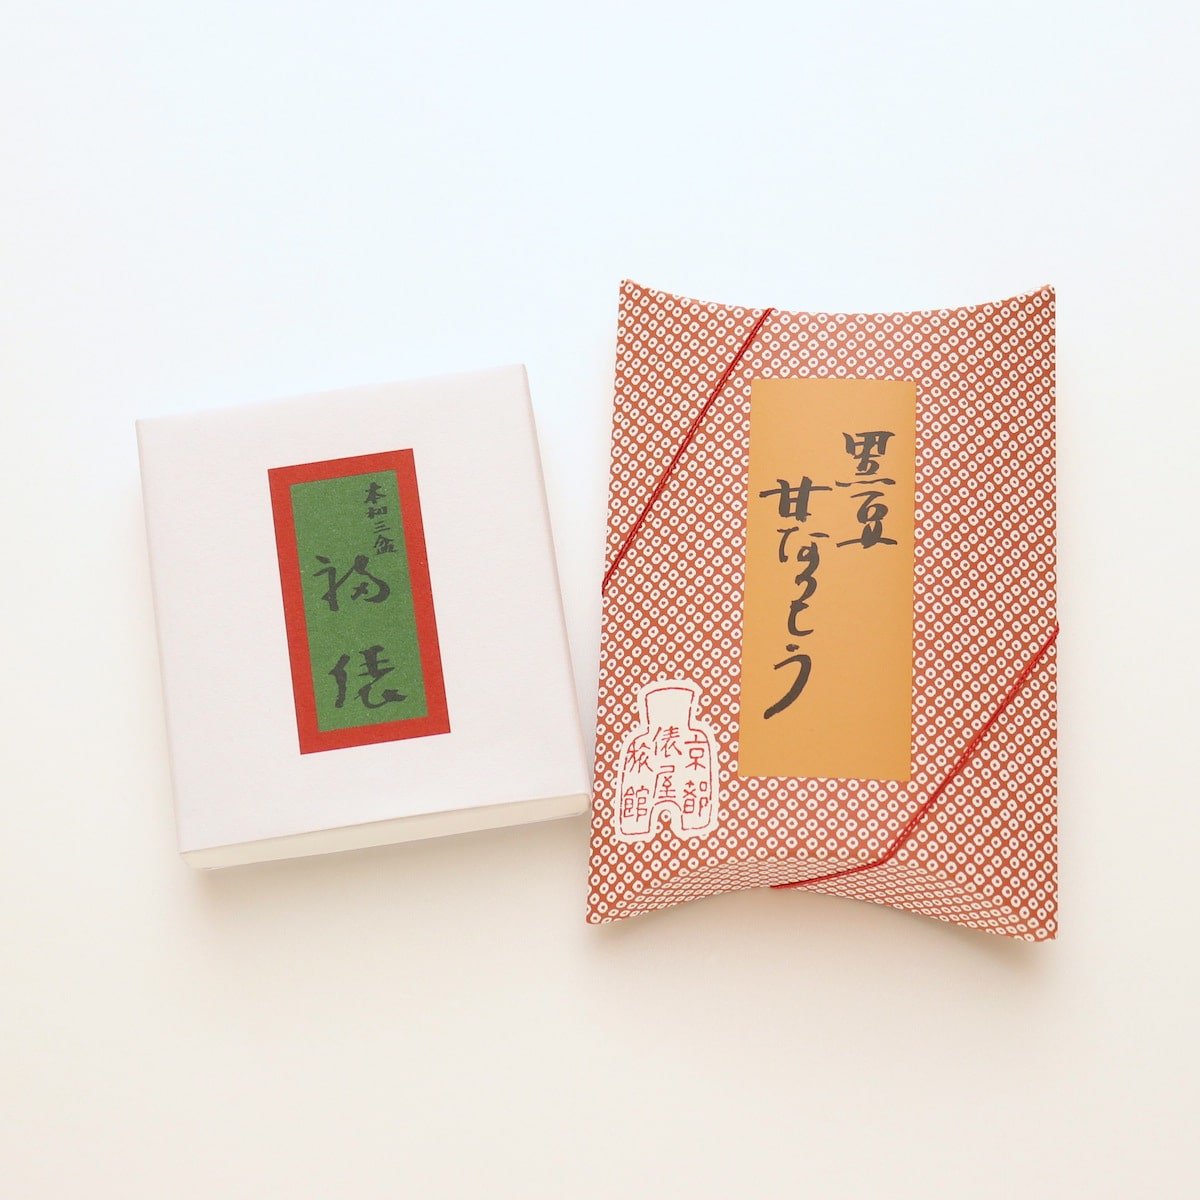 お菓子2種のギフト - ギャラリー遊形 オンラインストア｜京都「俵屋旅館」の石鹸やアメニティグッズなどを取り扱っております